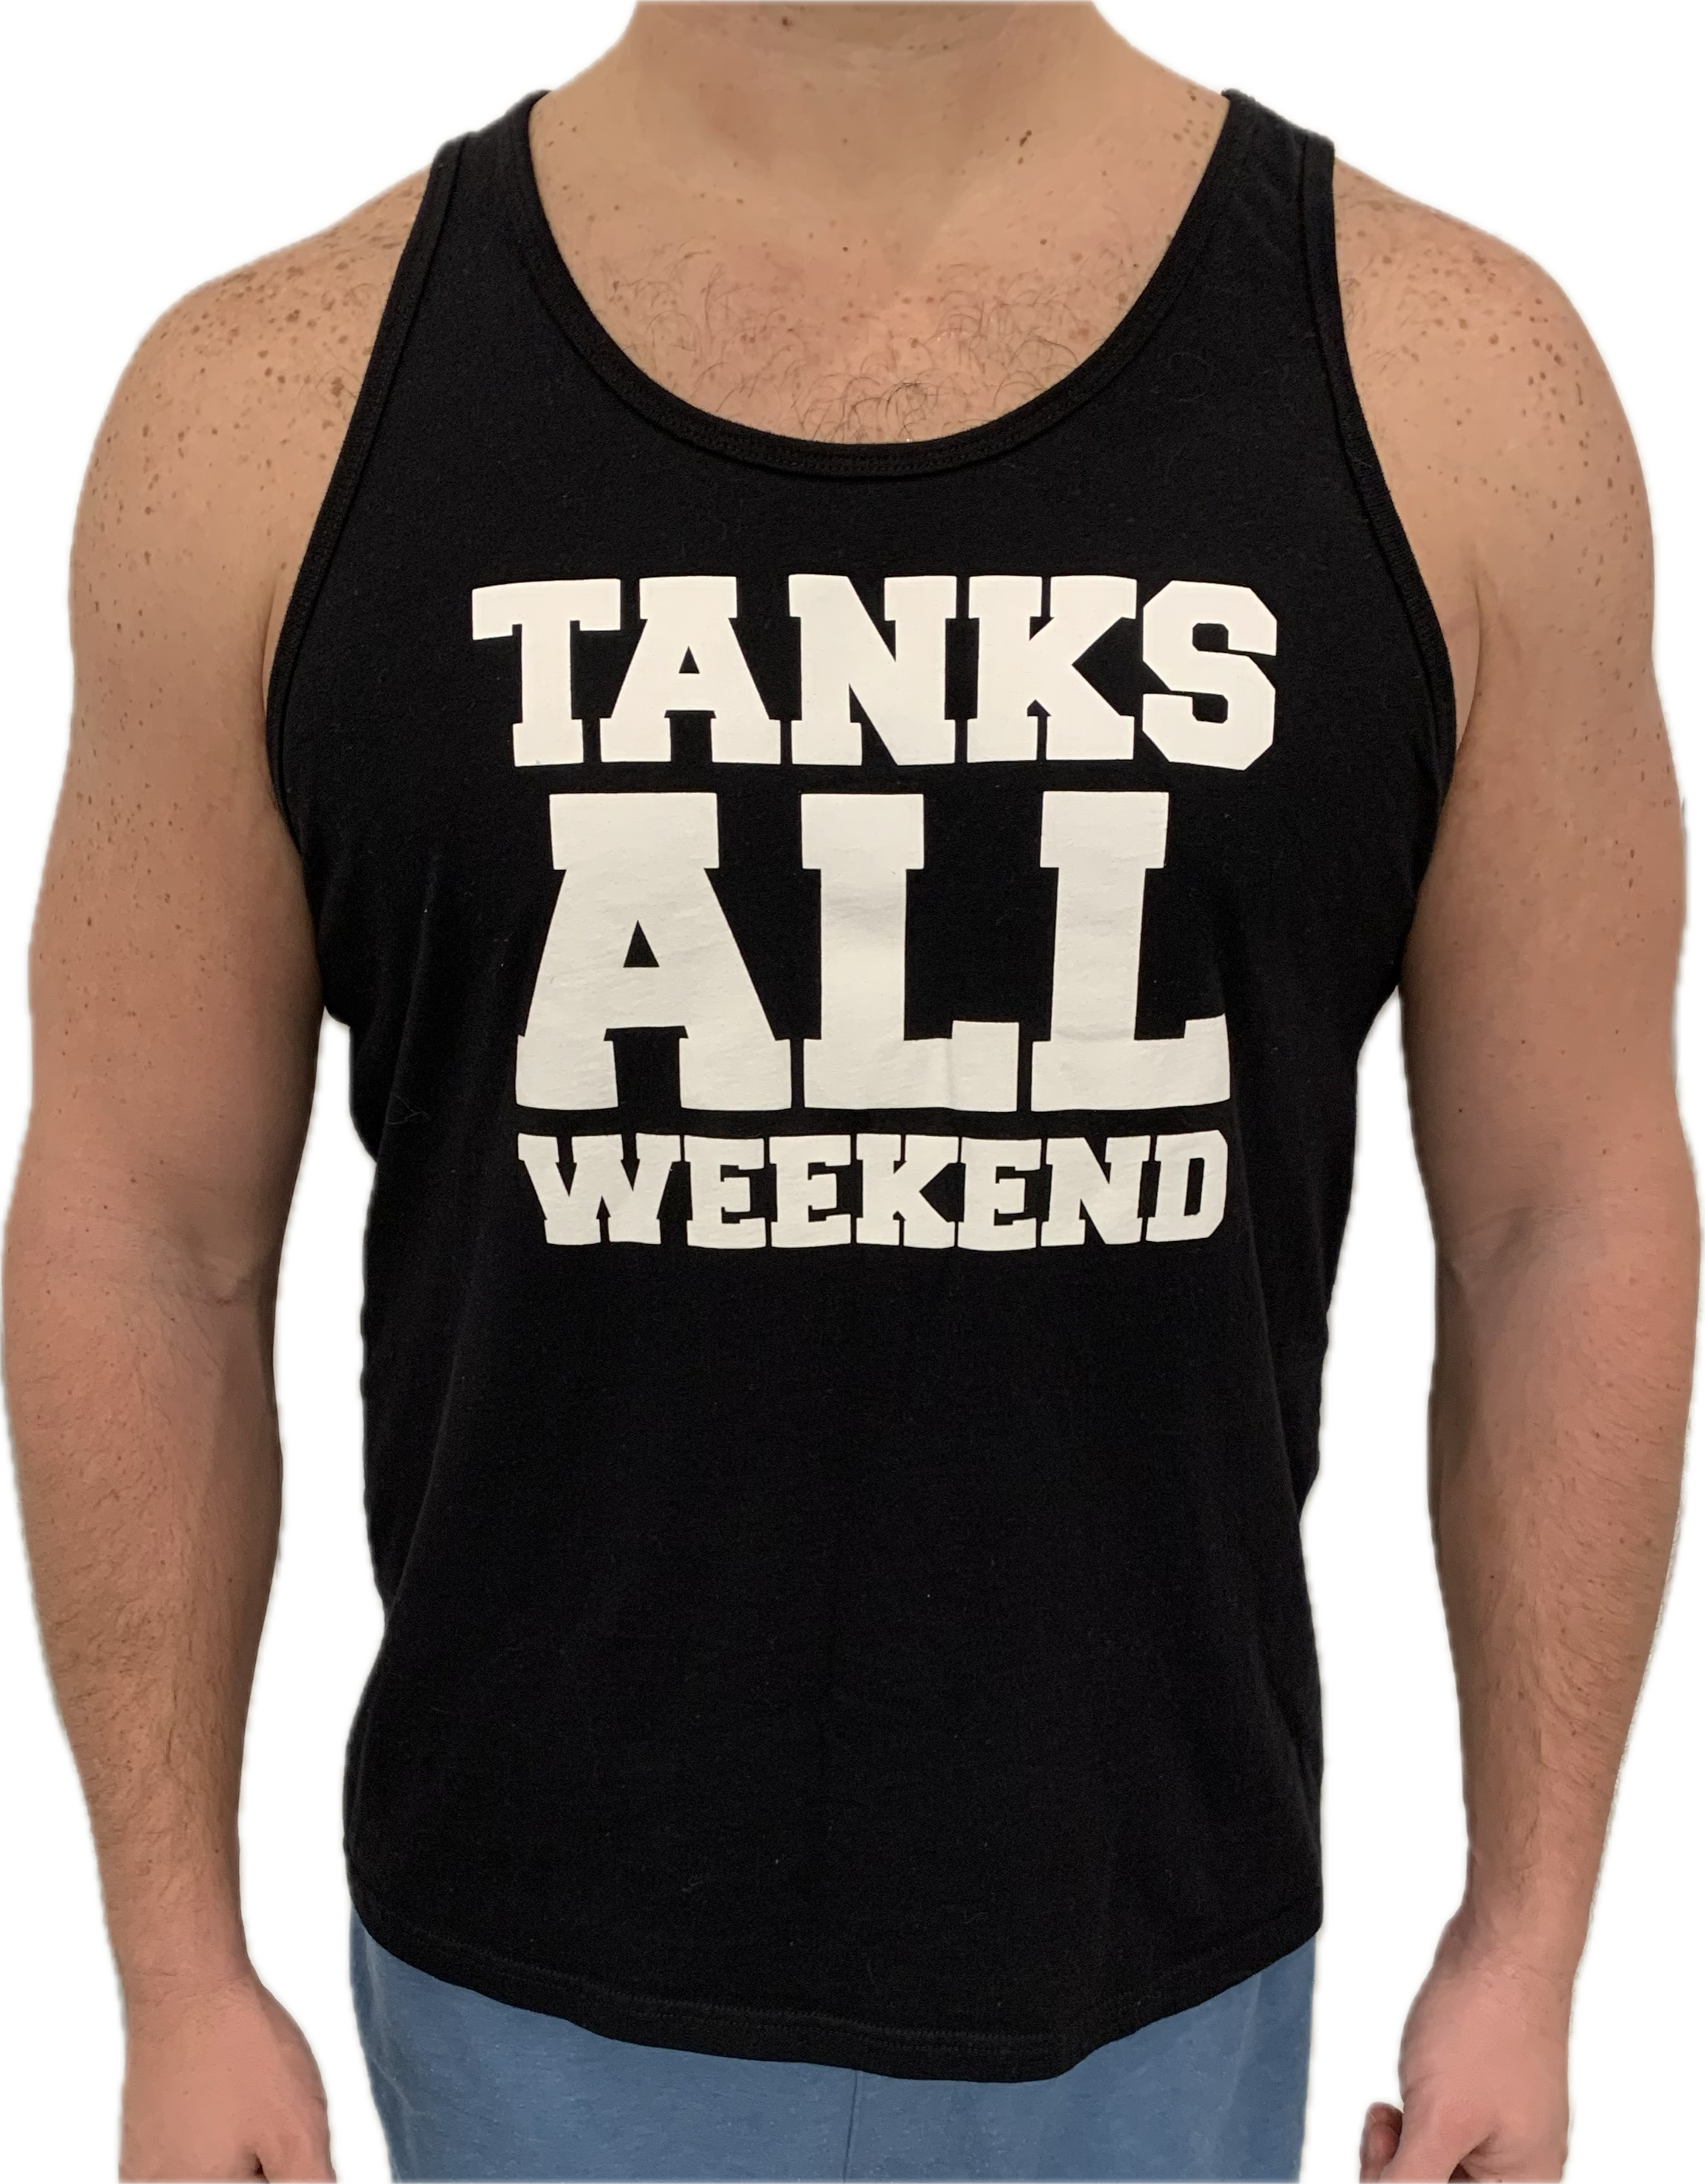 "TANKS ALL WEEKEND" Men's PUCKLEBOARD Tank